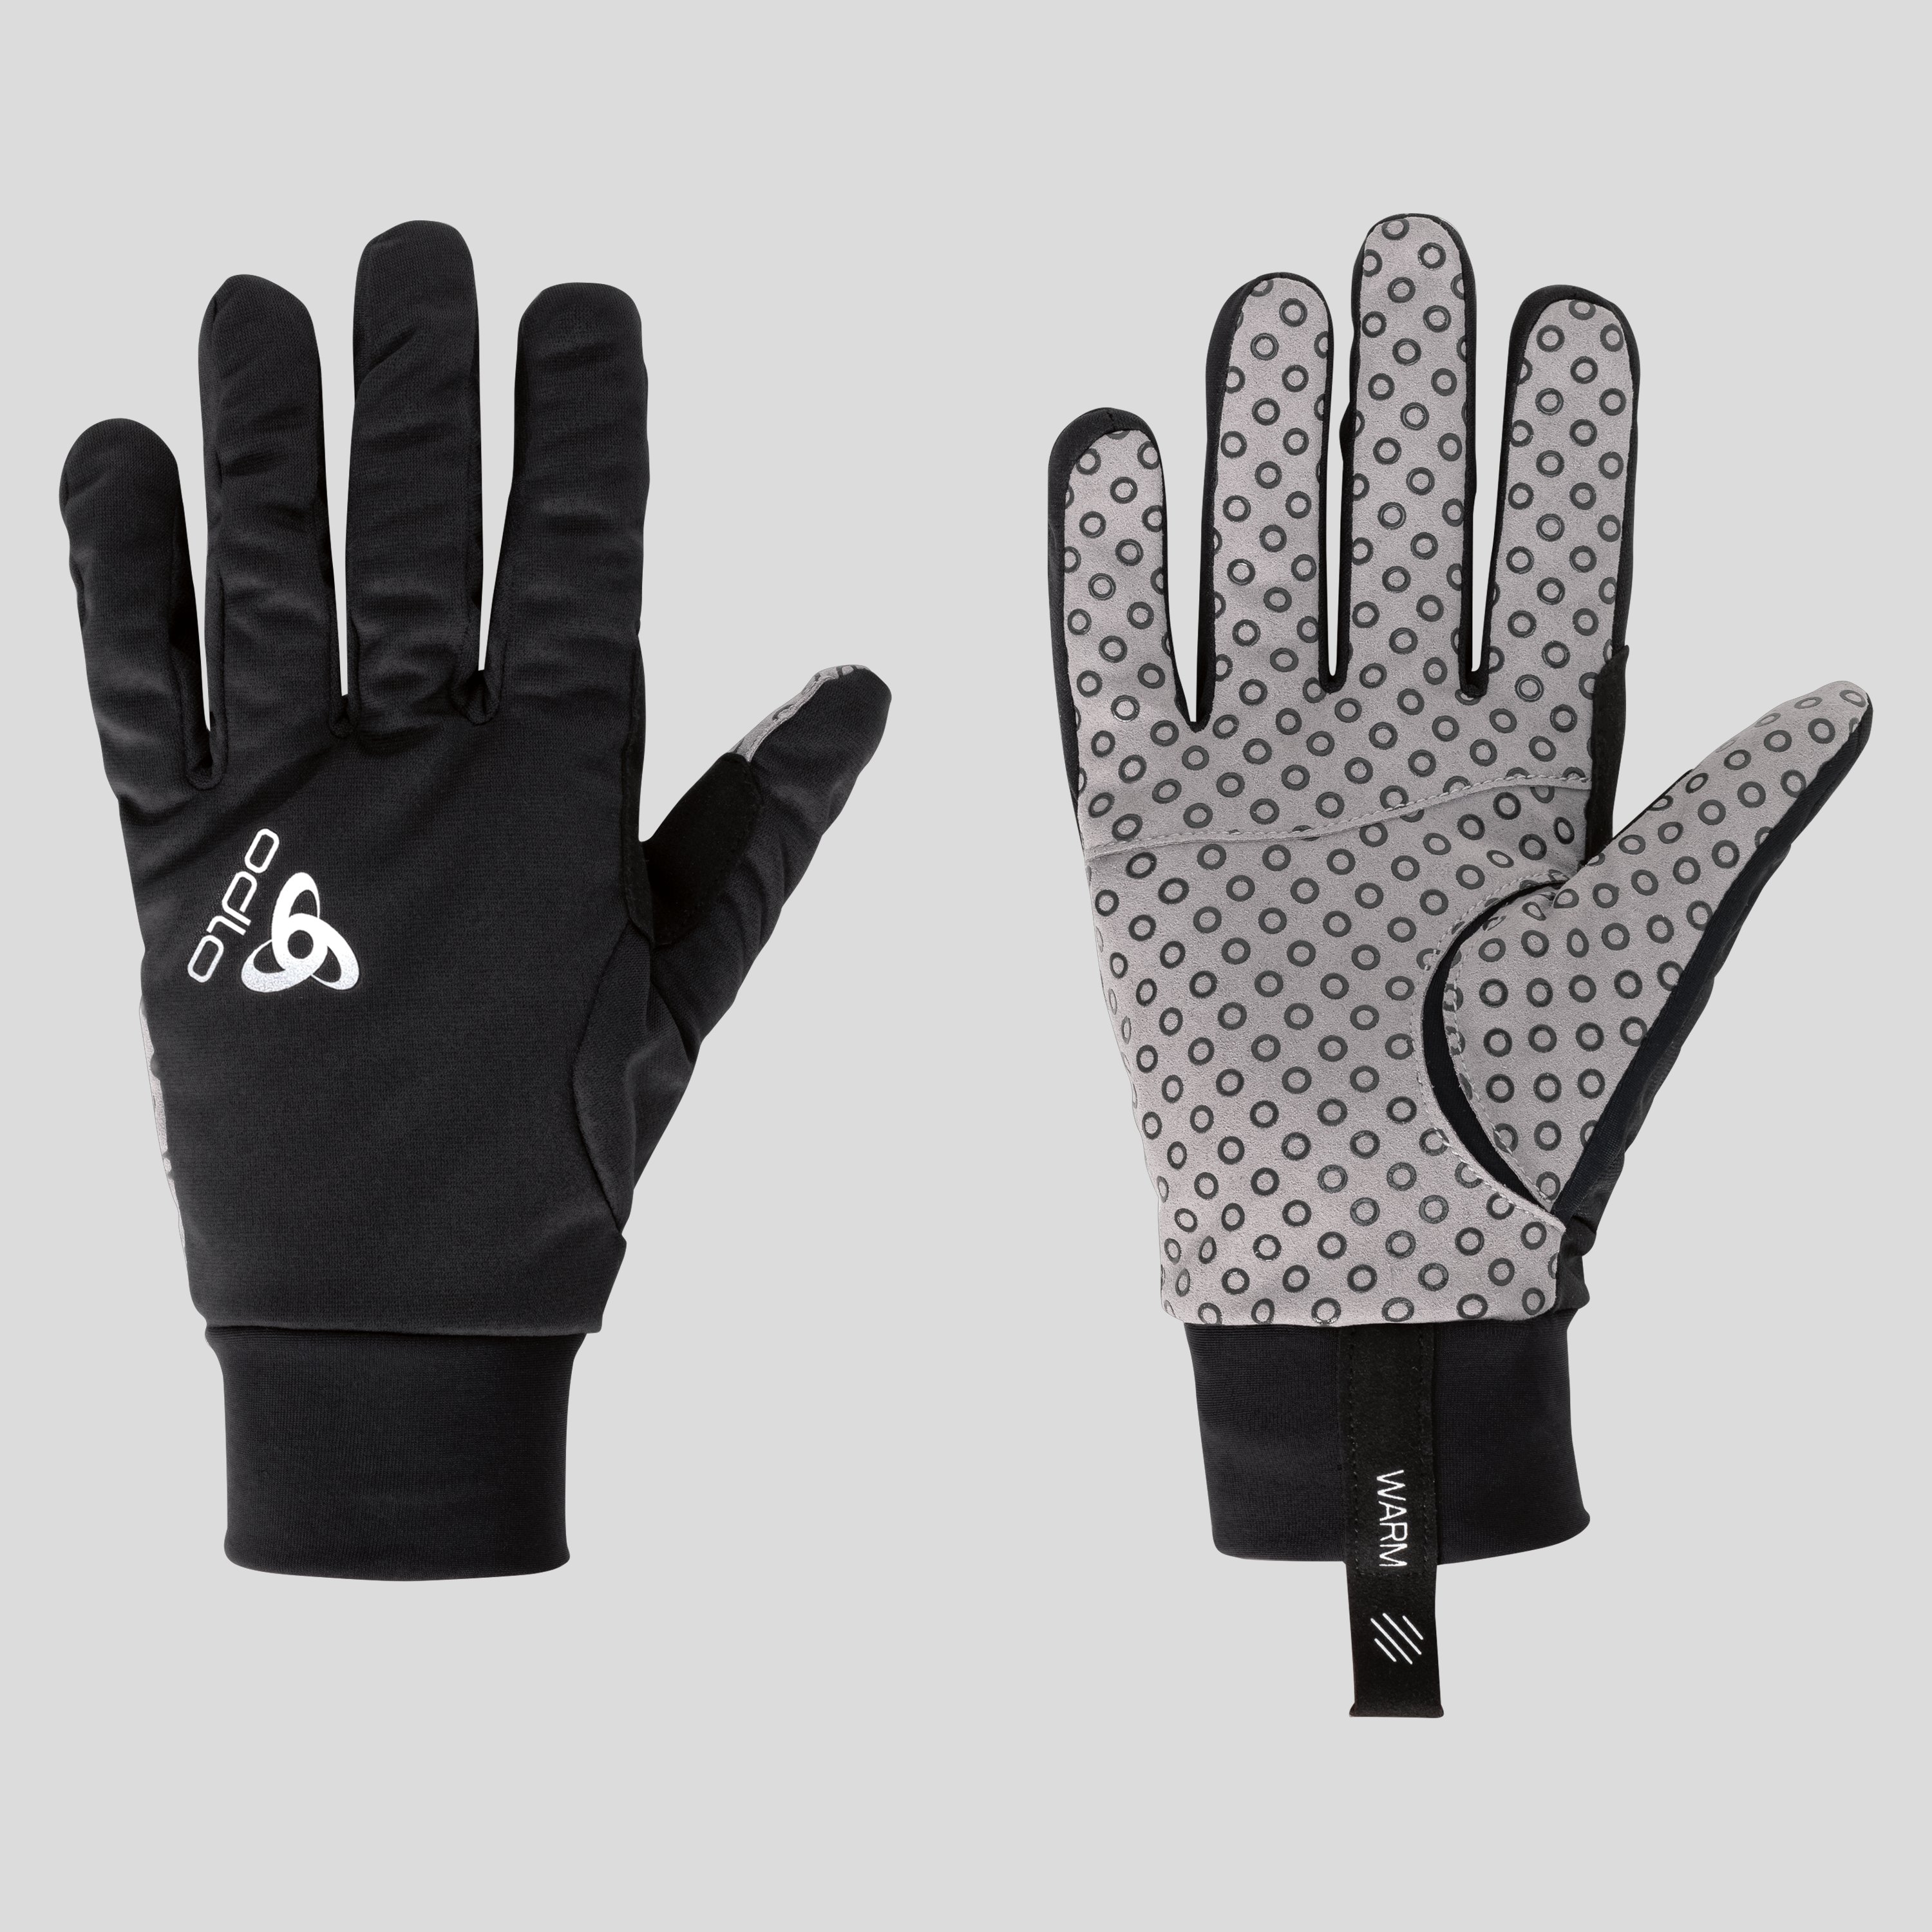 ODLO Aeolus Warm Handschuhe, XL, schwarz